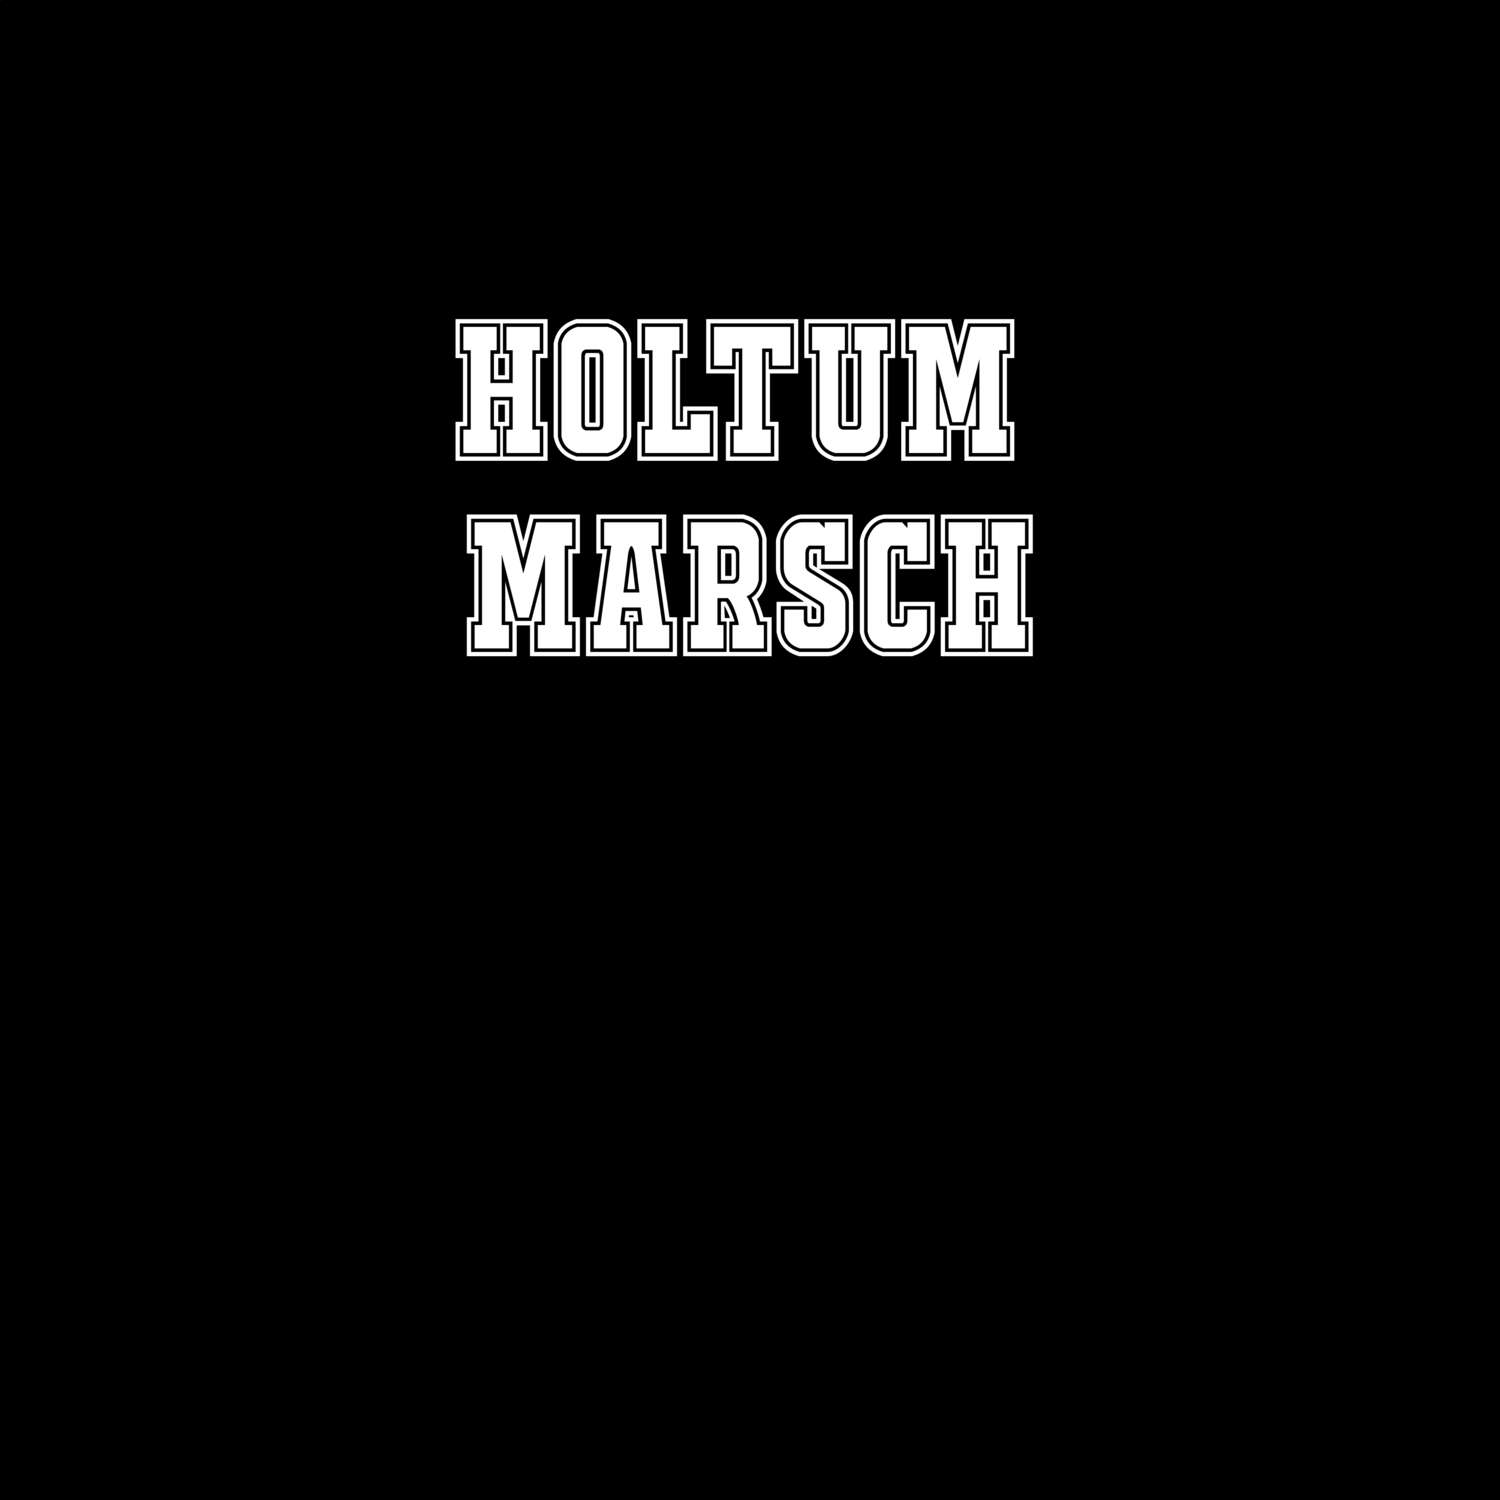 Holtum Marsch T-Shirt »Classic«